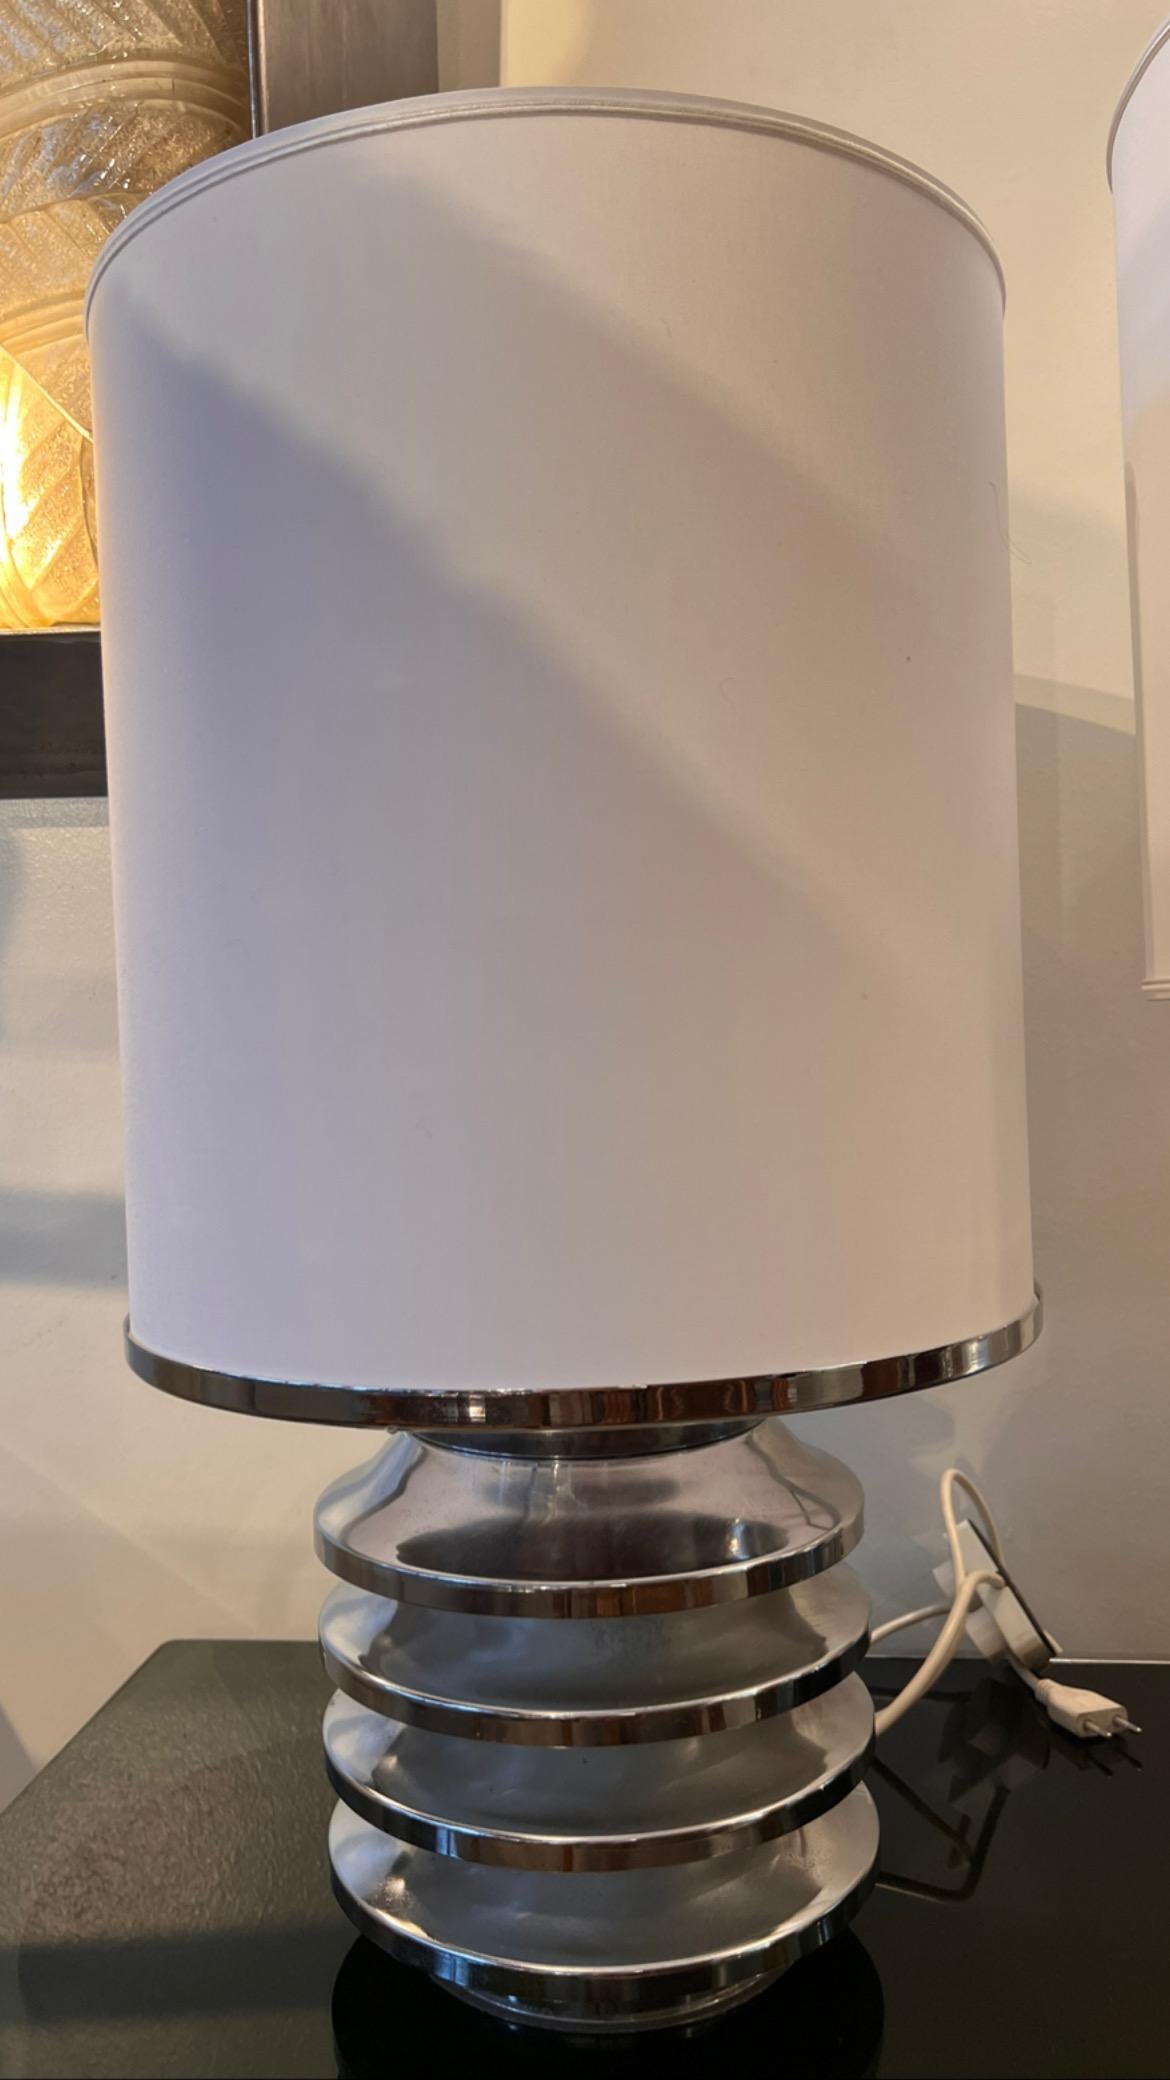 STAHL-TISCHLAMPE MIT WEISSEM ZYLINDER-SCHIRM-- 70er Jahre

  Befehl zur Zündung auch für die Basis

  Durchmesser 25 cm - Höhe mit Lampenschirm 68 cm

